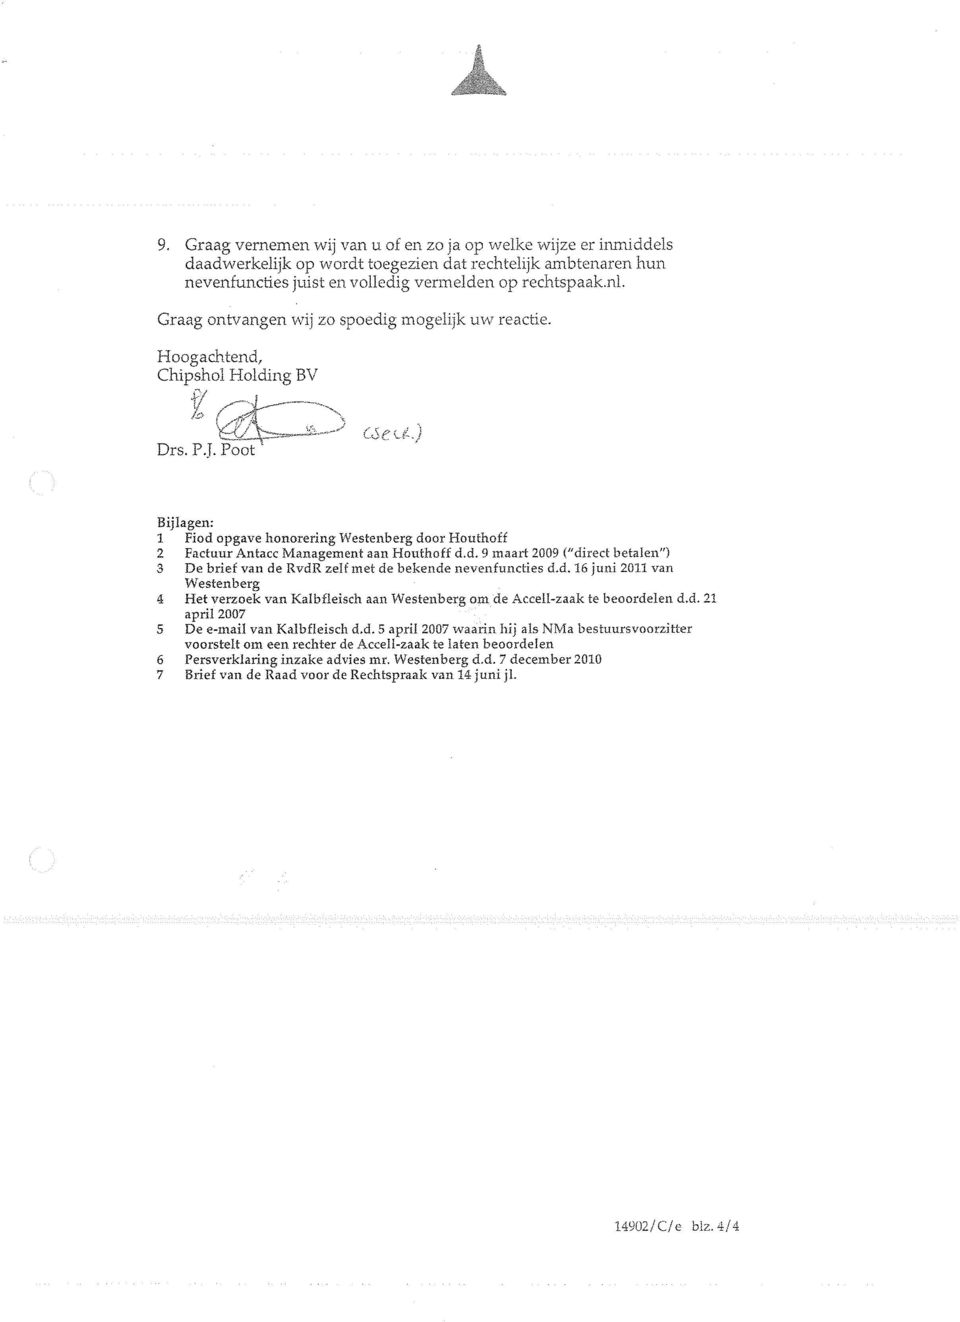 d. 16 juni 2011 van Westenberg 4 Het verzoek van Kalbfleisch aan Westenberg omde AcceII-zaak te beoordelen d.d. 21 april 2007 5 De e-mail van KalhfIeisch d.d.sapril 2007 waarin hij als NMa bestuursvoorzitter voorstelt om een rechter de Accell-zaak te laten beoordelen 6 Persverklaring inzake advies mr.